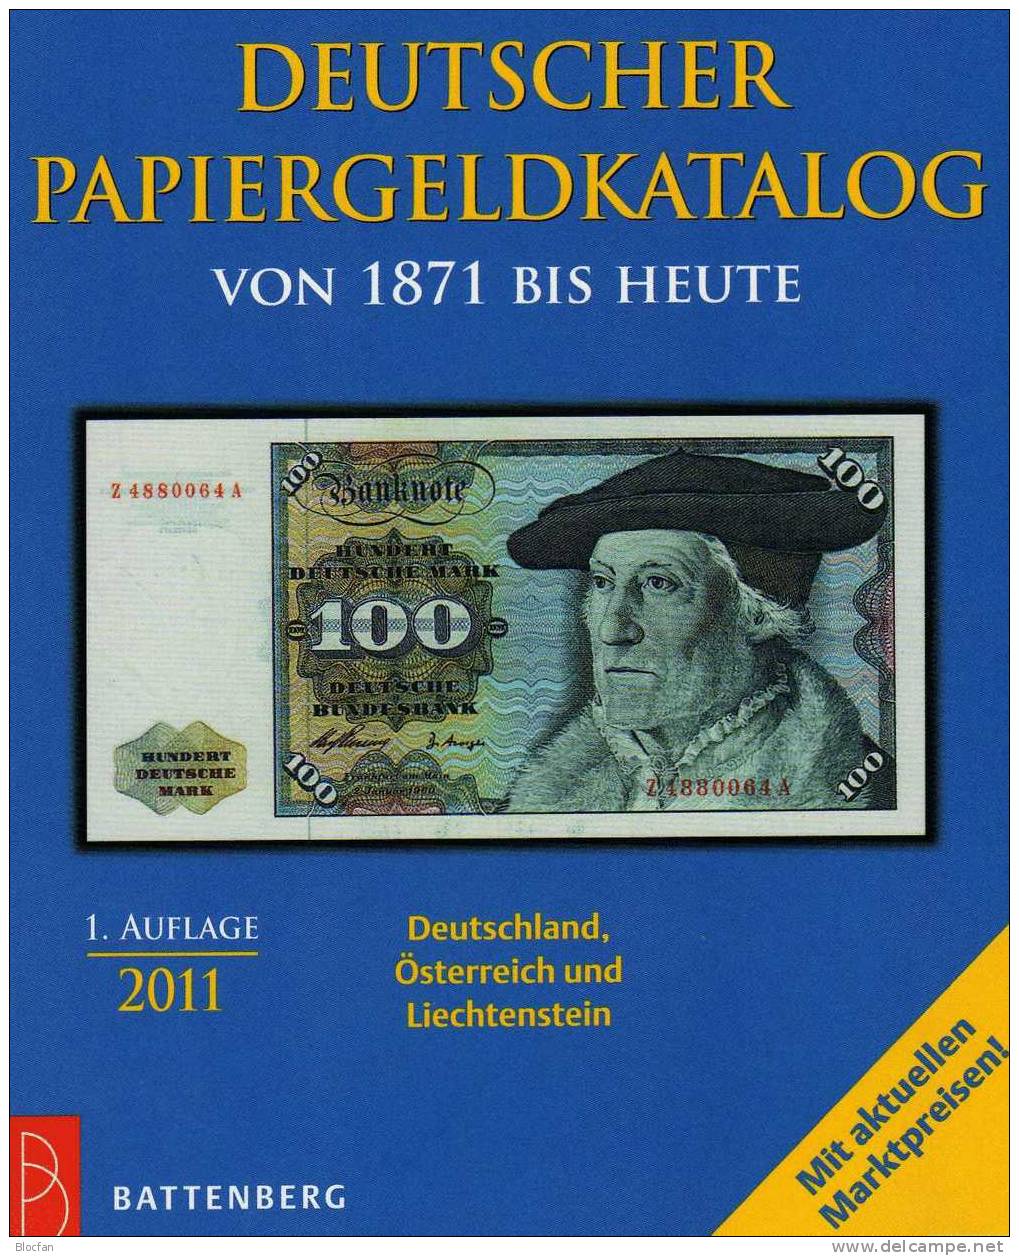 Banknoten Katalog Deutschland 2011 New 12€ Für Papiergeld Neue Auflage EURO-Banknoten Grabowski Battenberg Of Catalogue - Collezioni